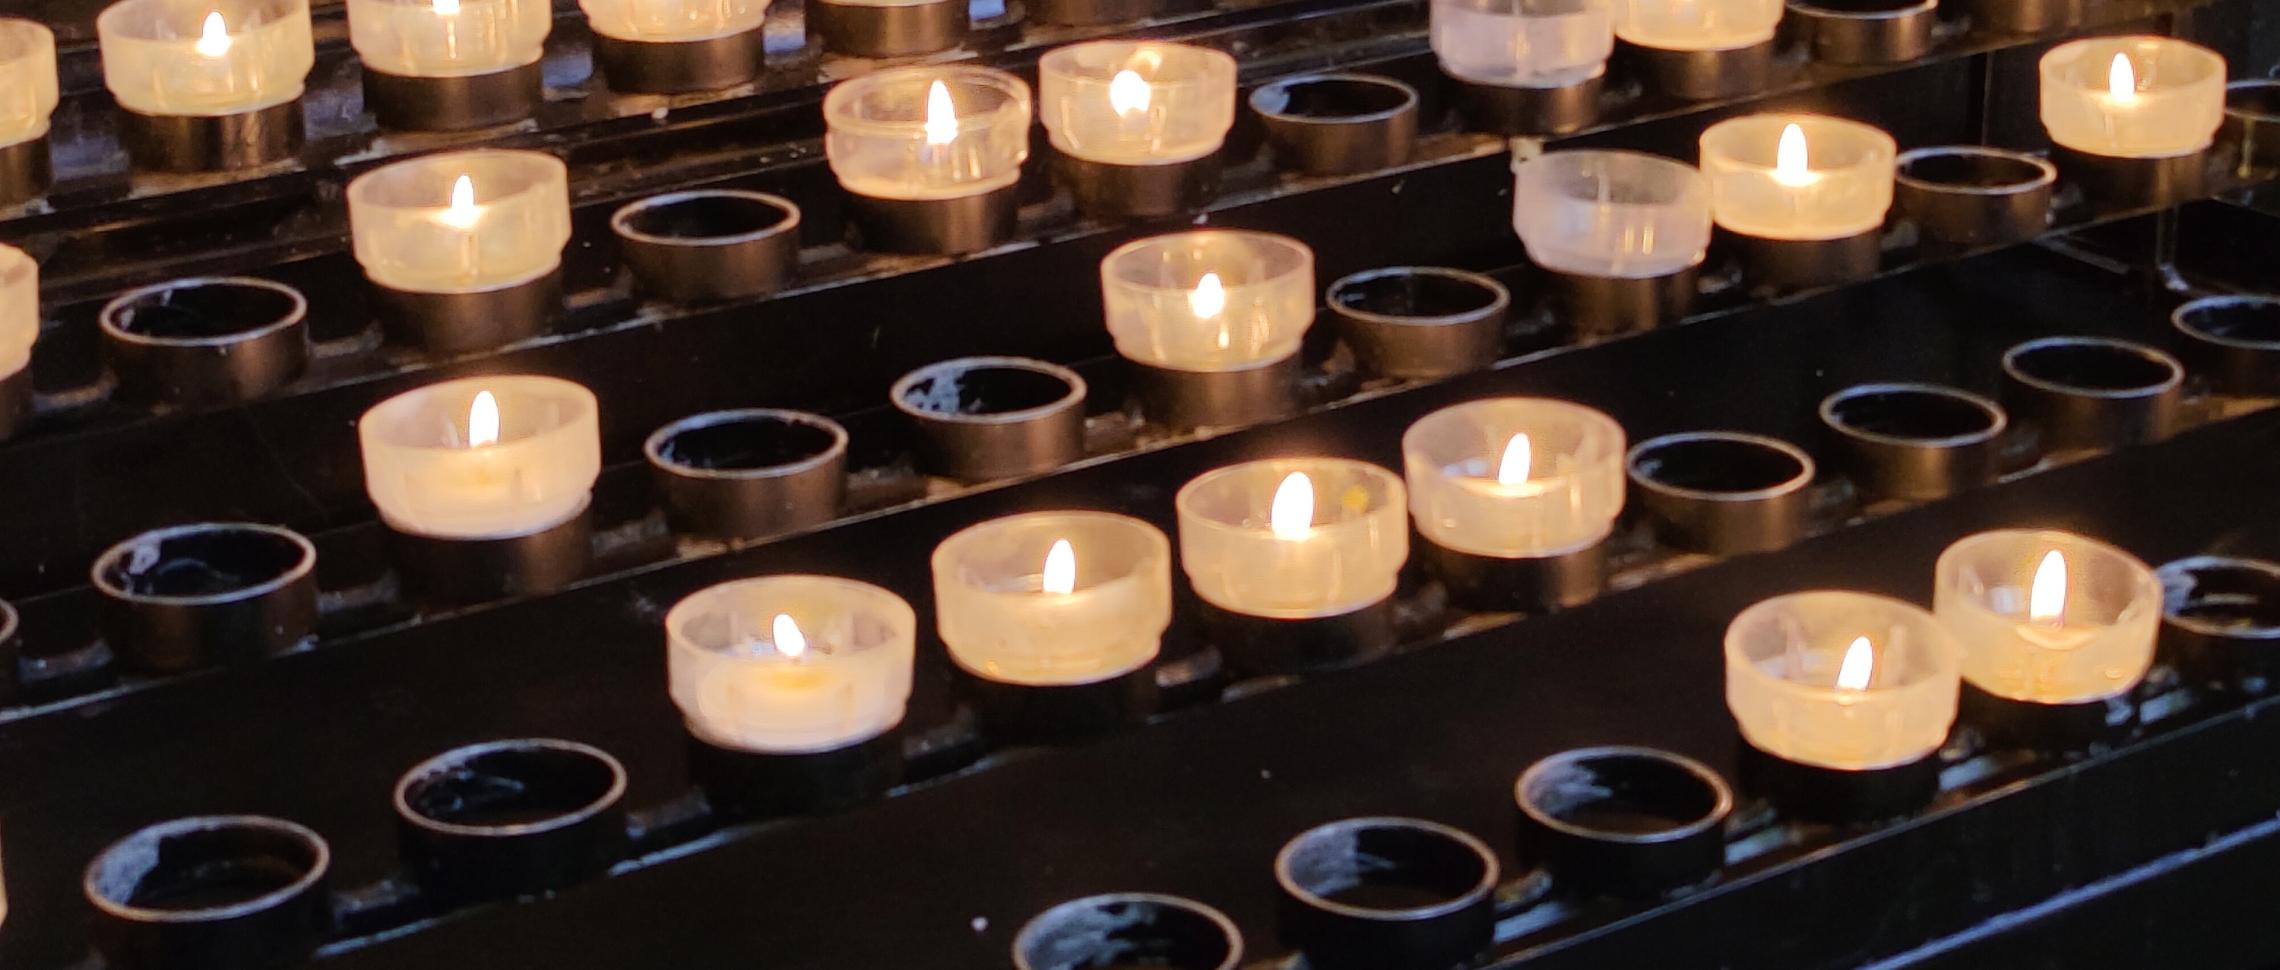 Kerzen - Licht und Hoffnung